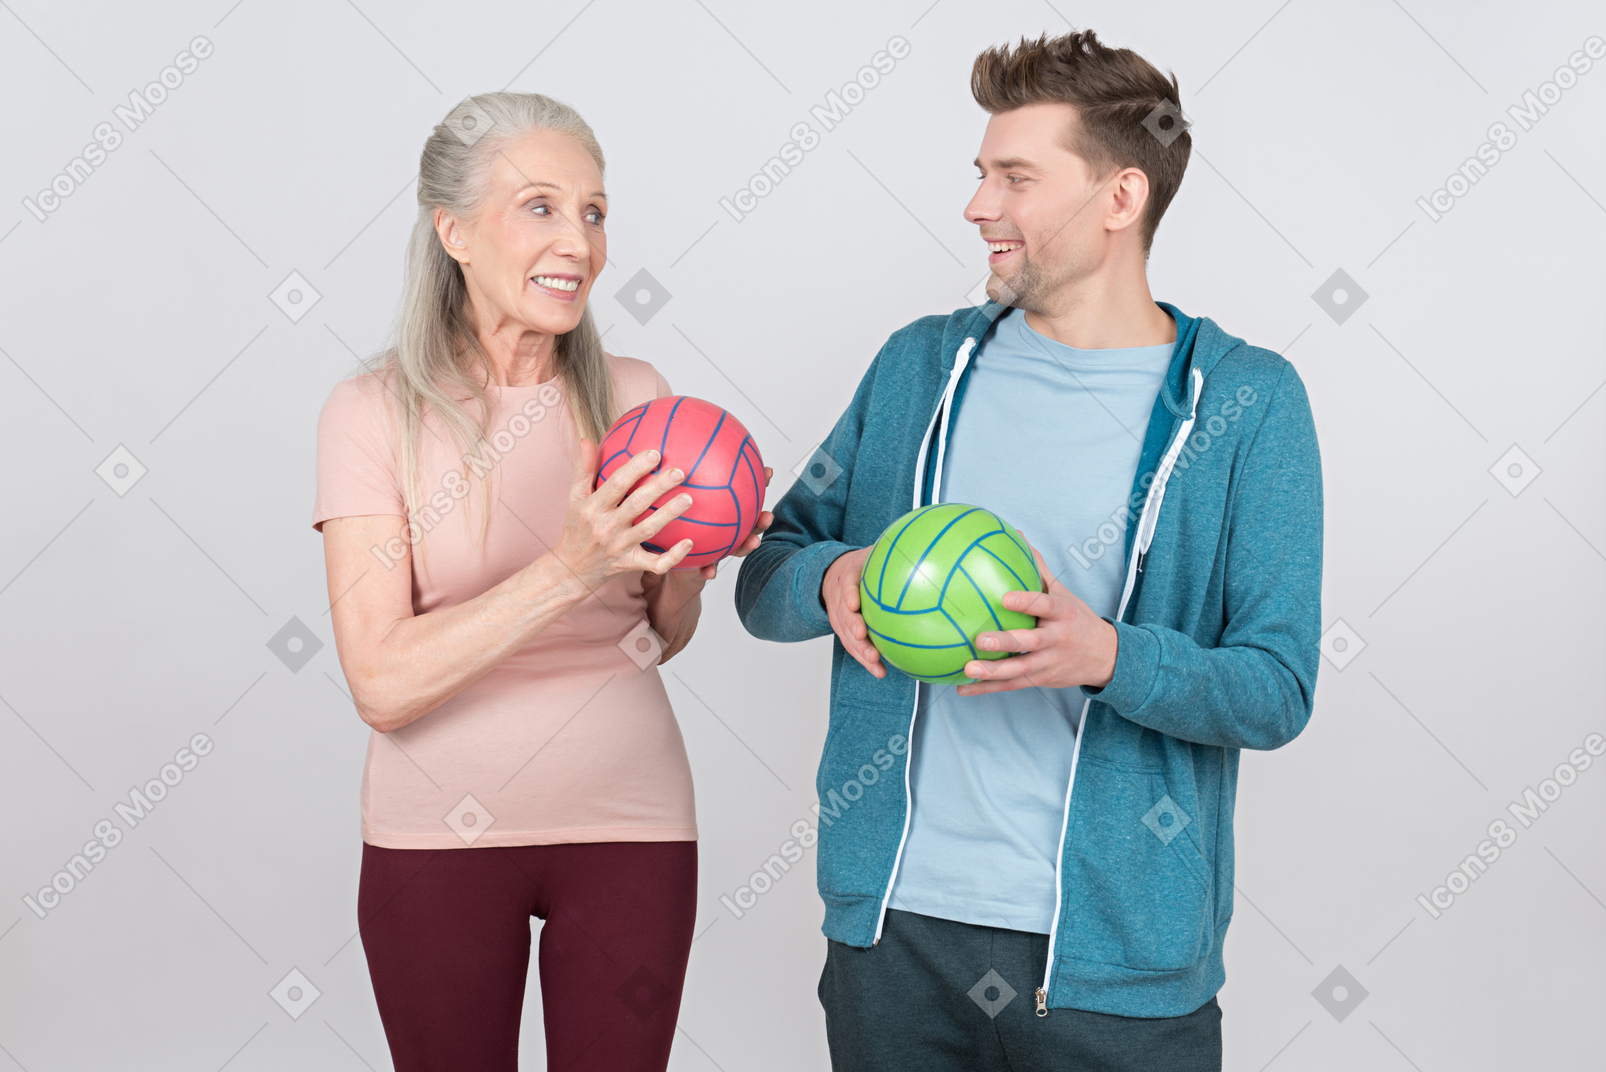 Sonriente anciana y chico joven sosteniendo bolas de colores